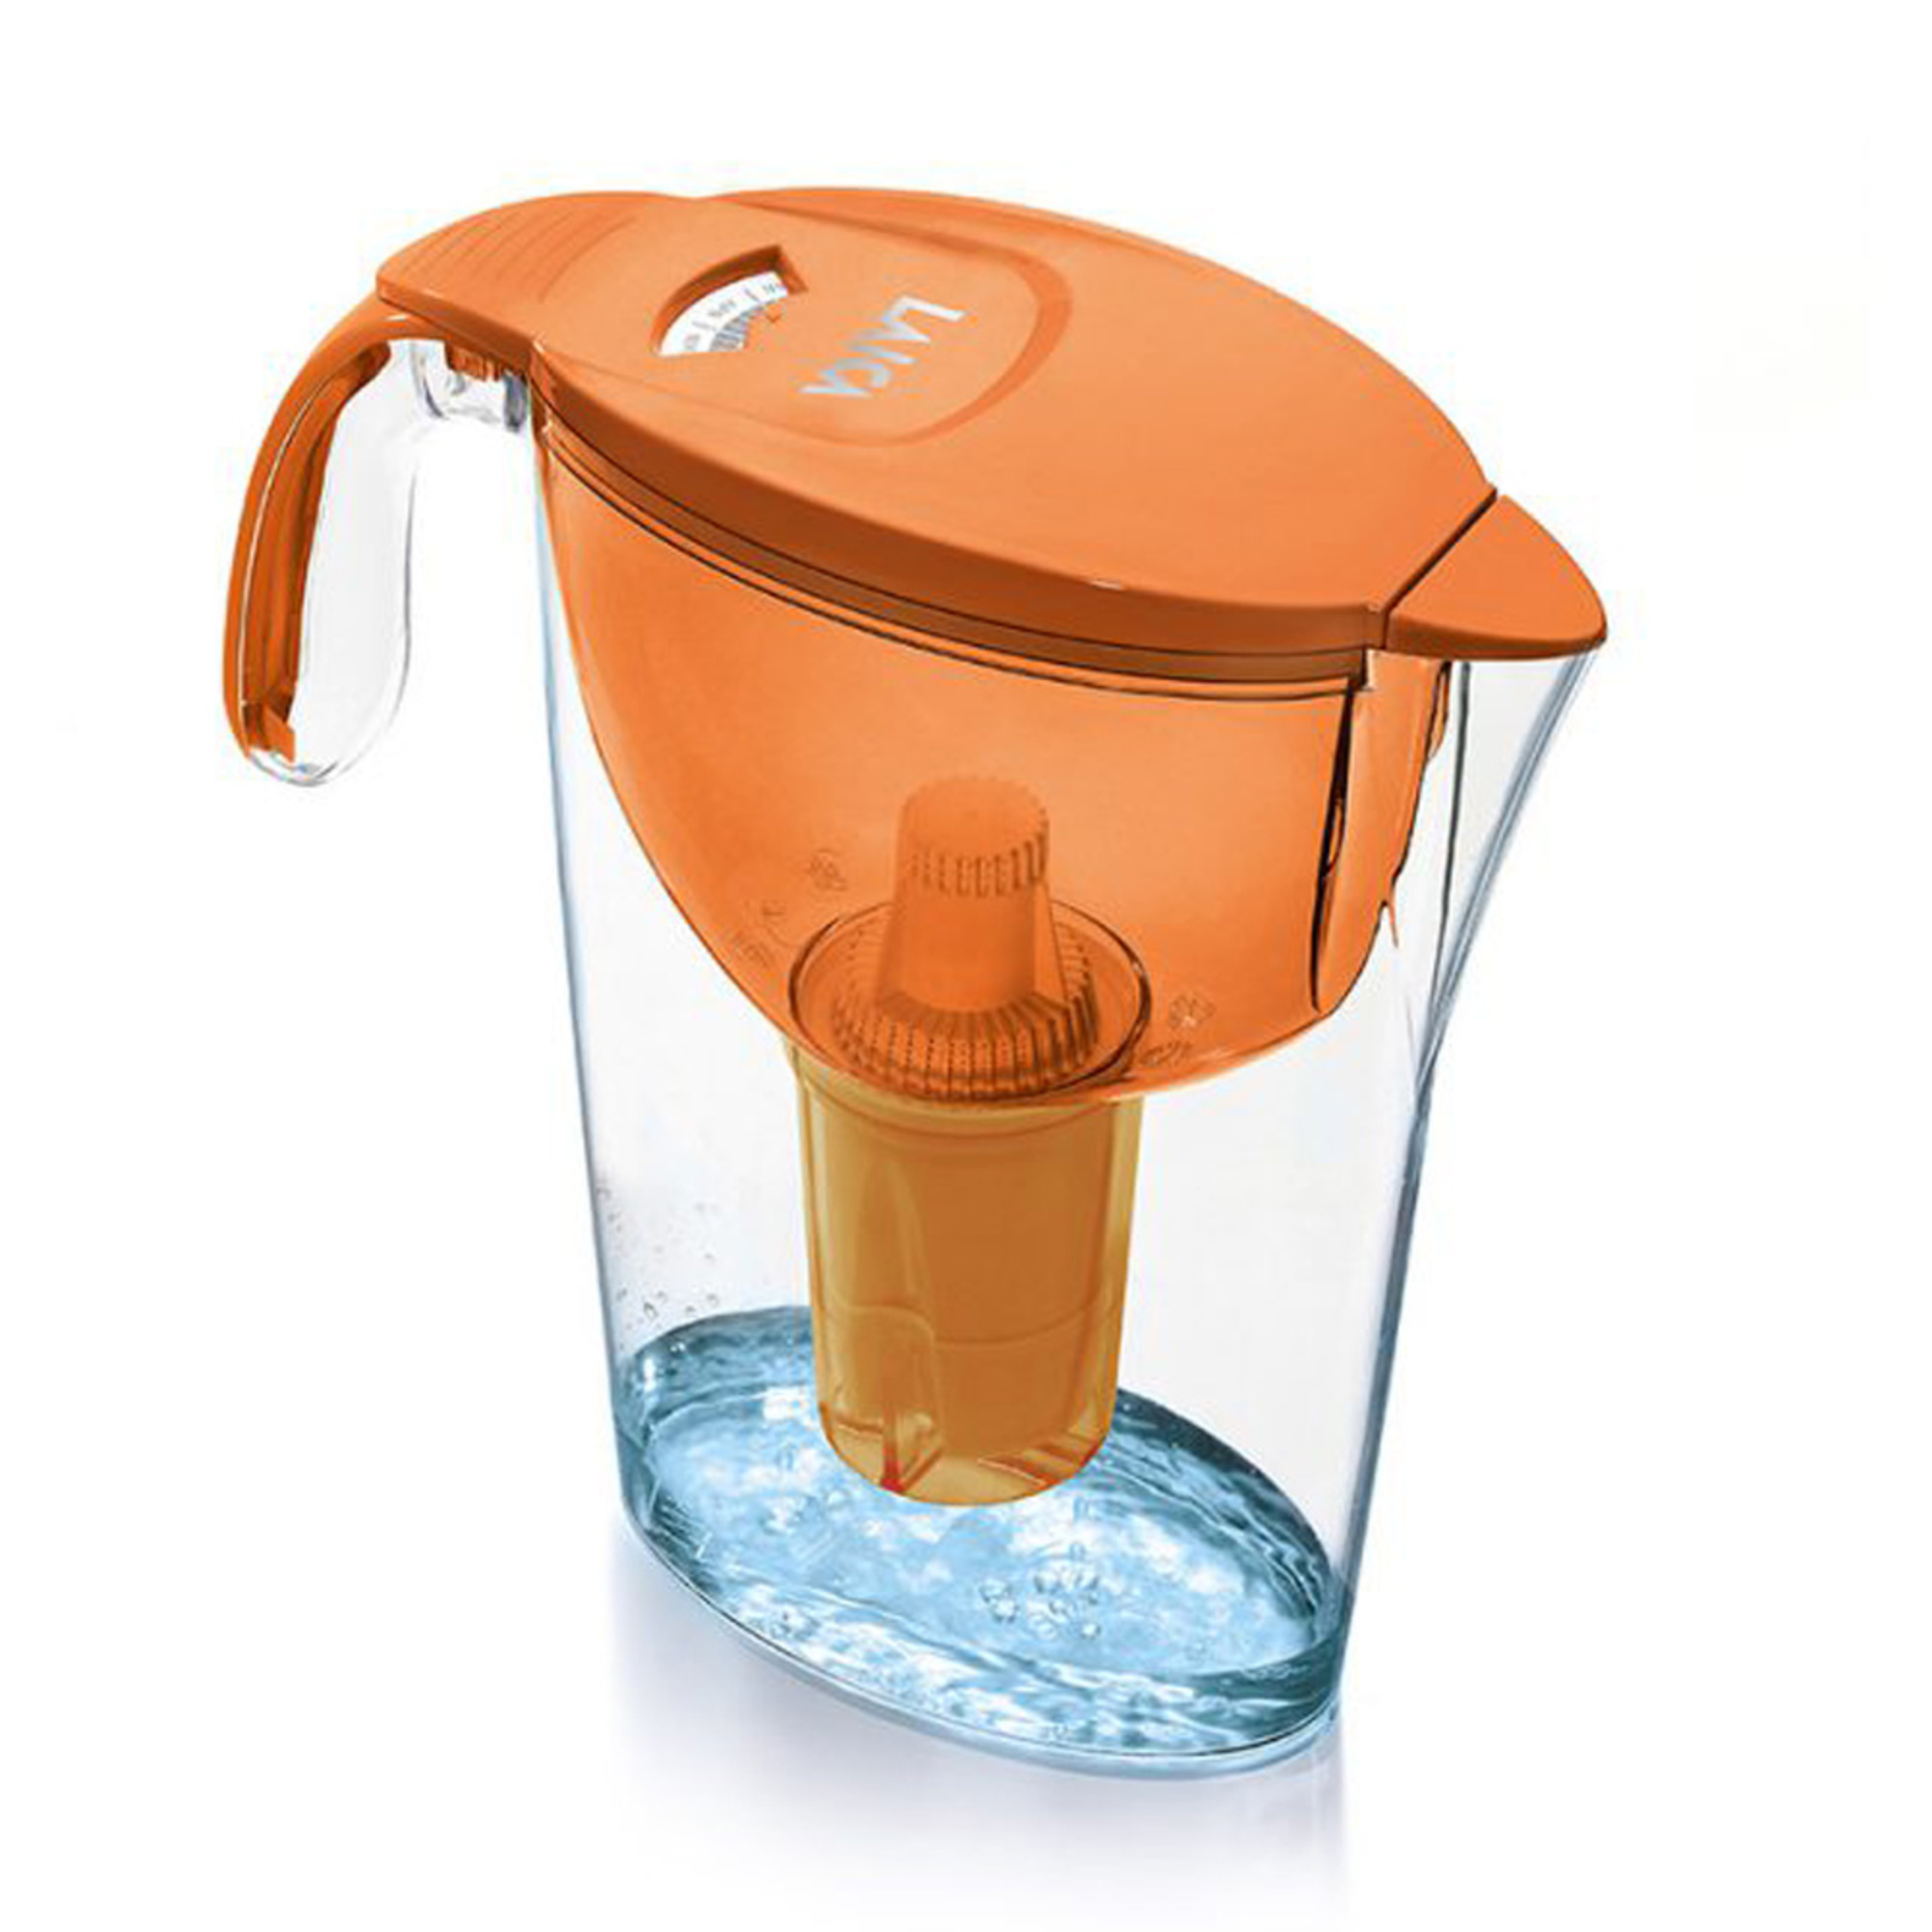 LAICA LA243 Water filter, Naranja